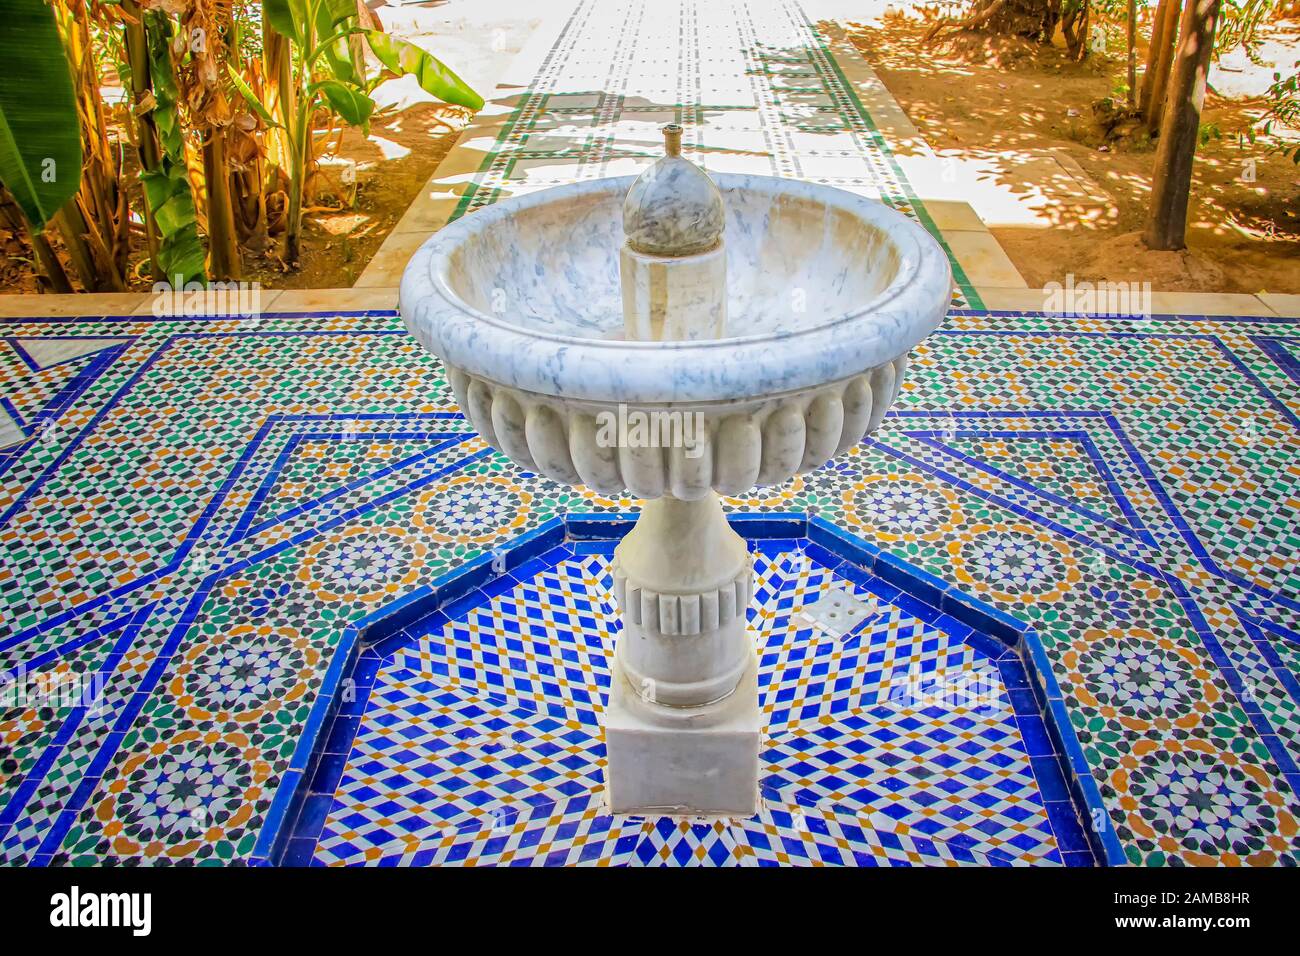 Weißer Steinbrunnen inmitten des grünen Gartens des islamischen Palastes. Es ist in Marokko. Der Brunnen steht auf blau-weißen Fliesen mit typisch arabischem und Stockfoto